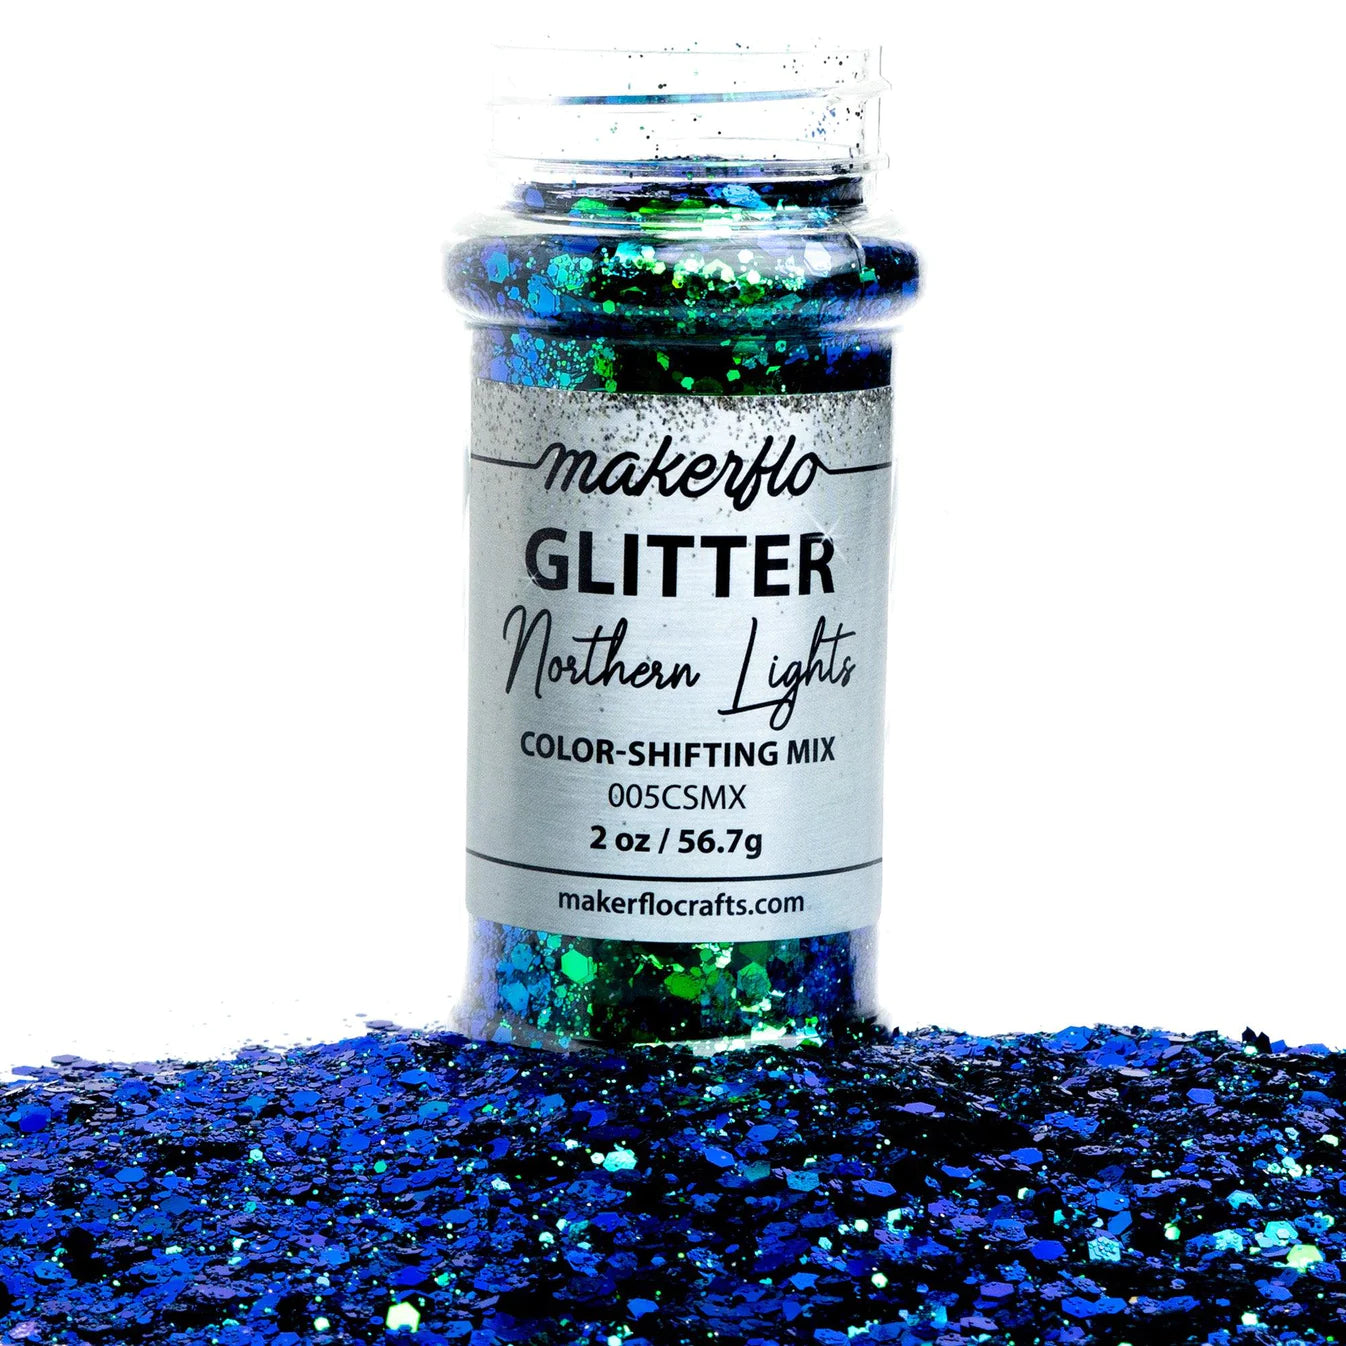 Ice Queen Glitter & Tumbler Kit